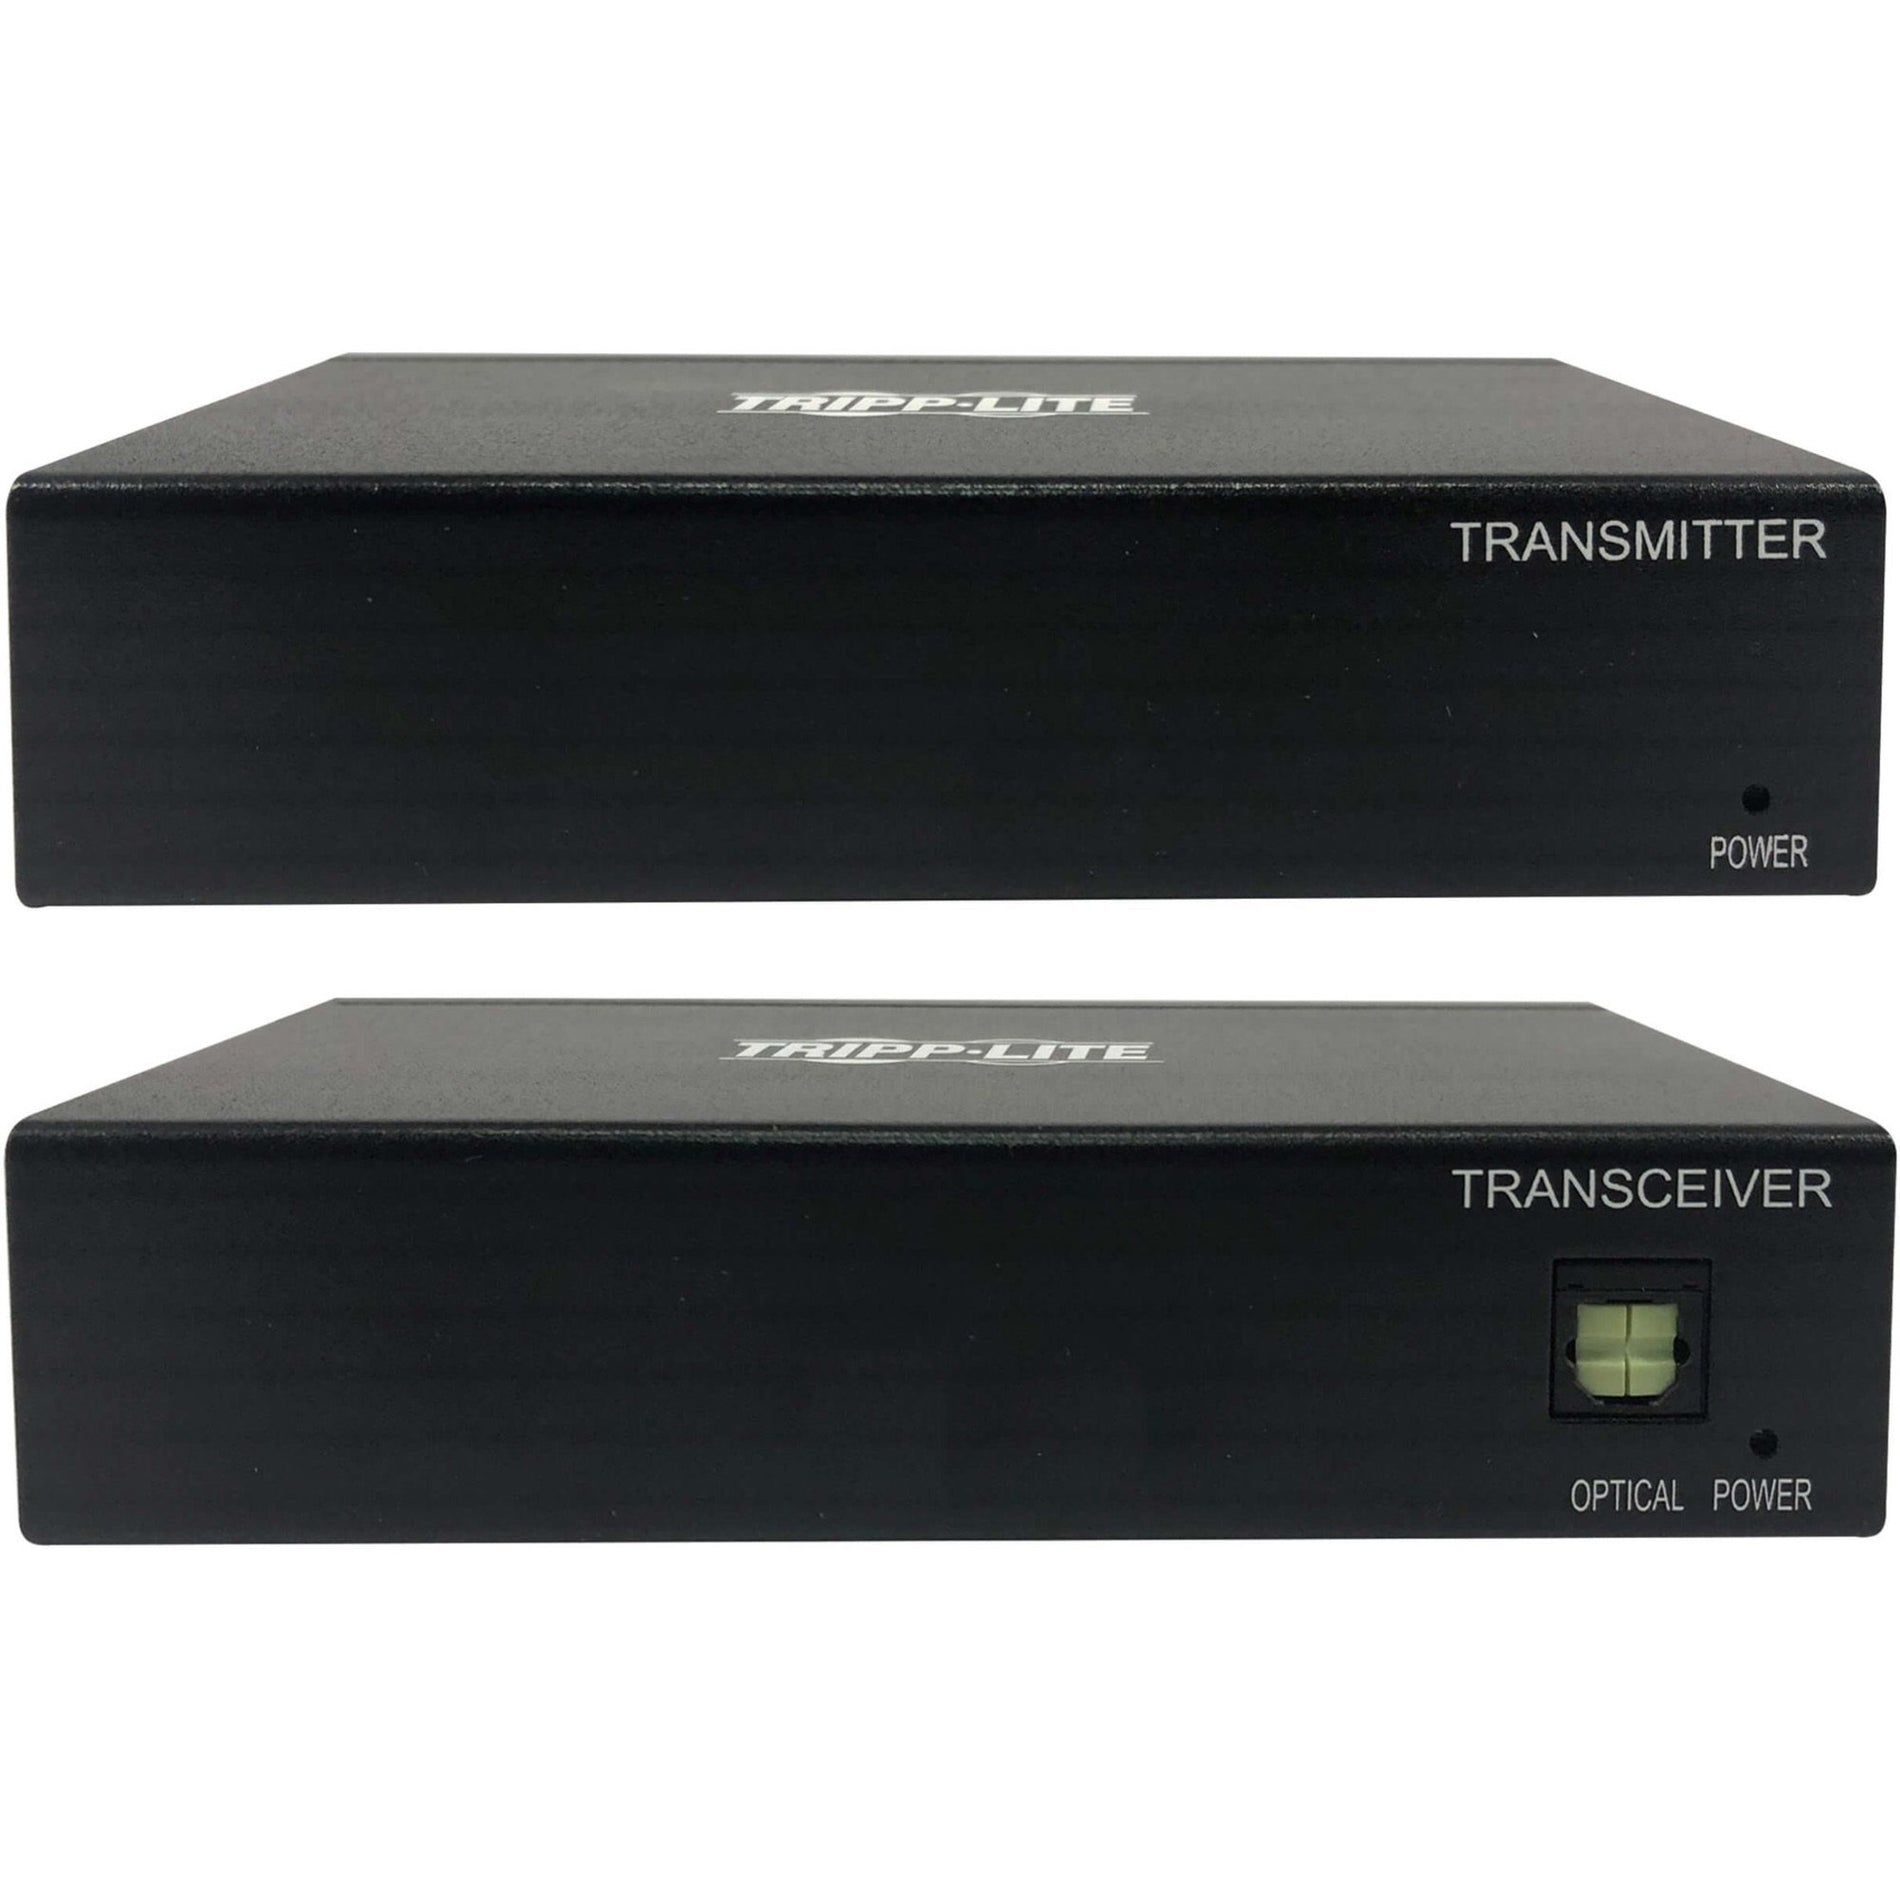 Tripp Lite B127A-111-BDTH Video Extender Transceiver, 4K UHD, 3840 x 2160, TAA Compliant